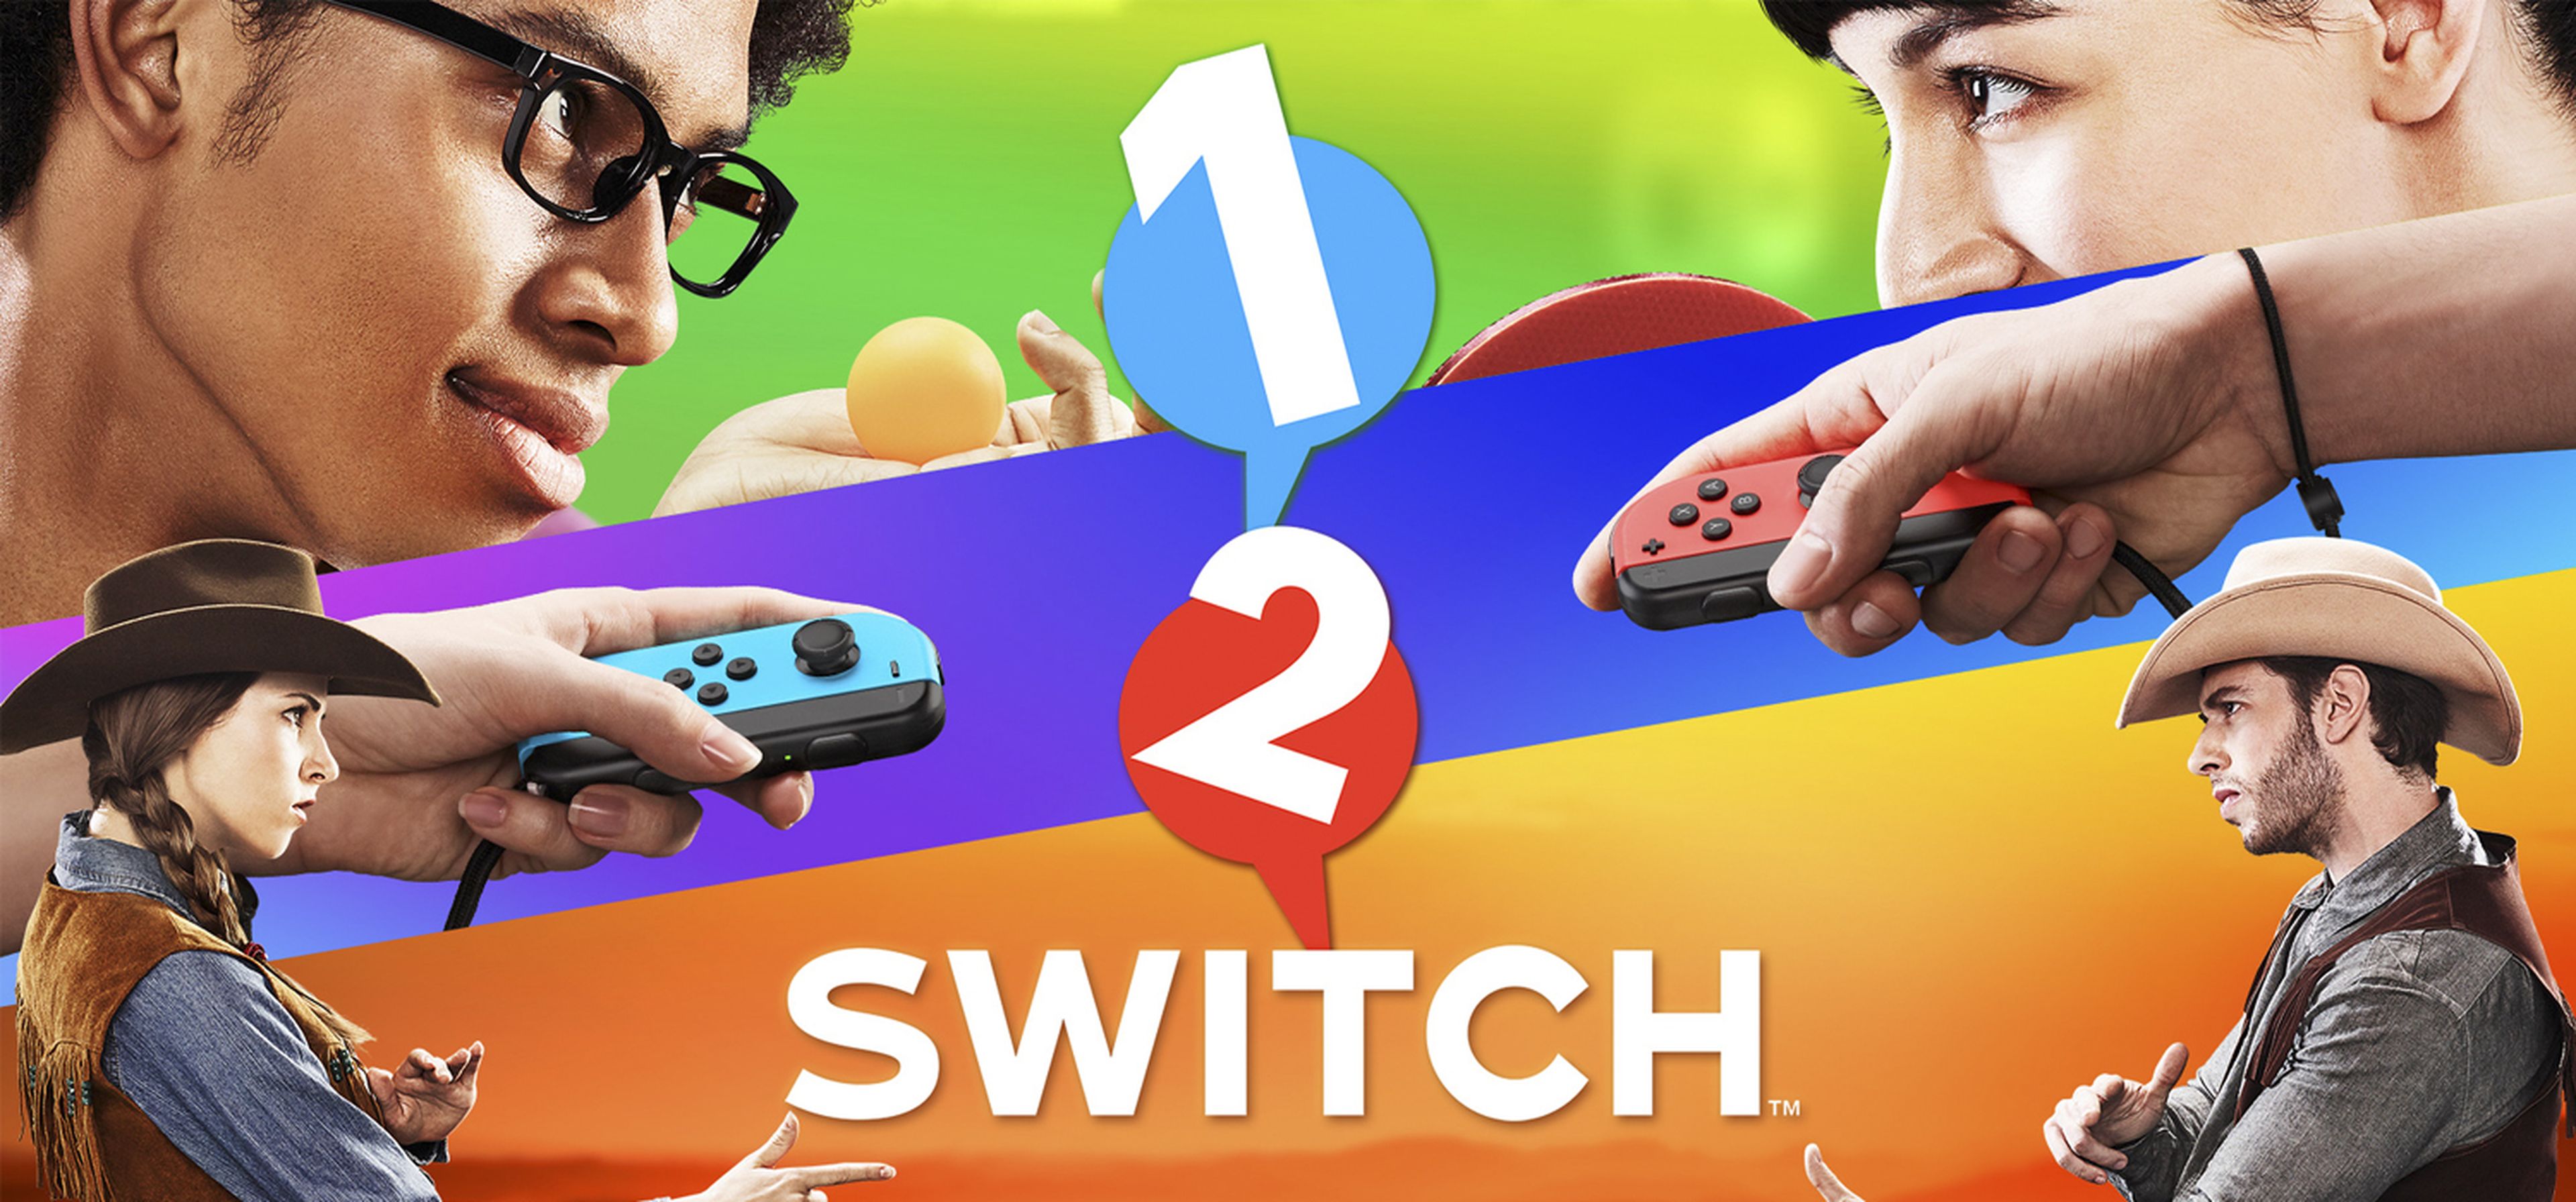 1-2 Switch - ¡Probamos sus minijuegos!